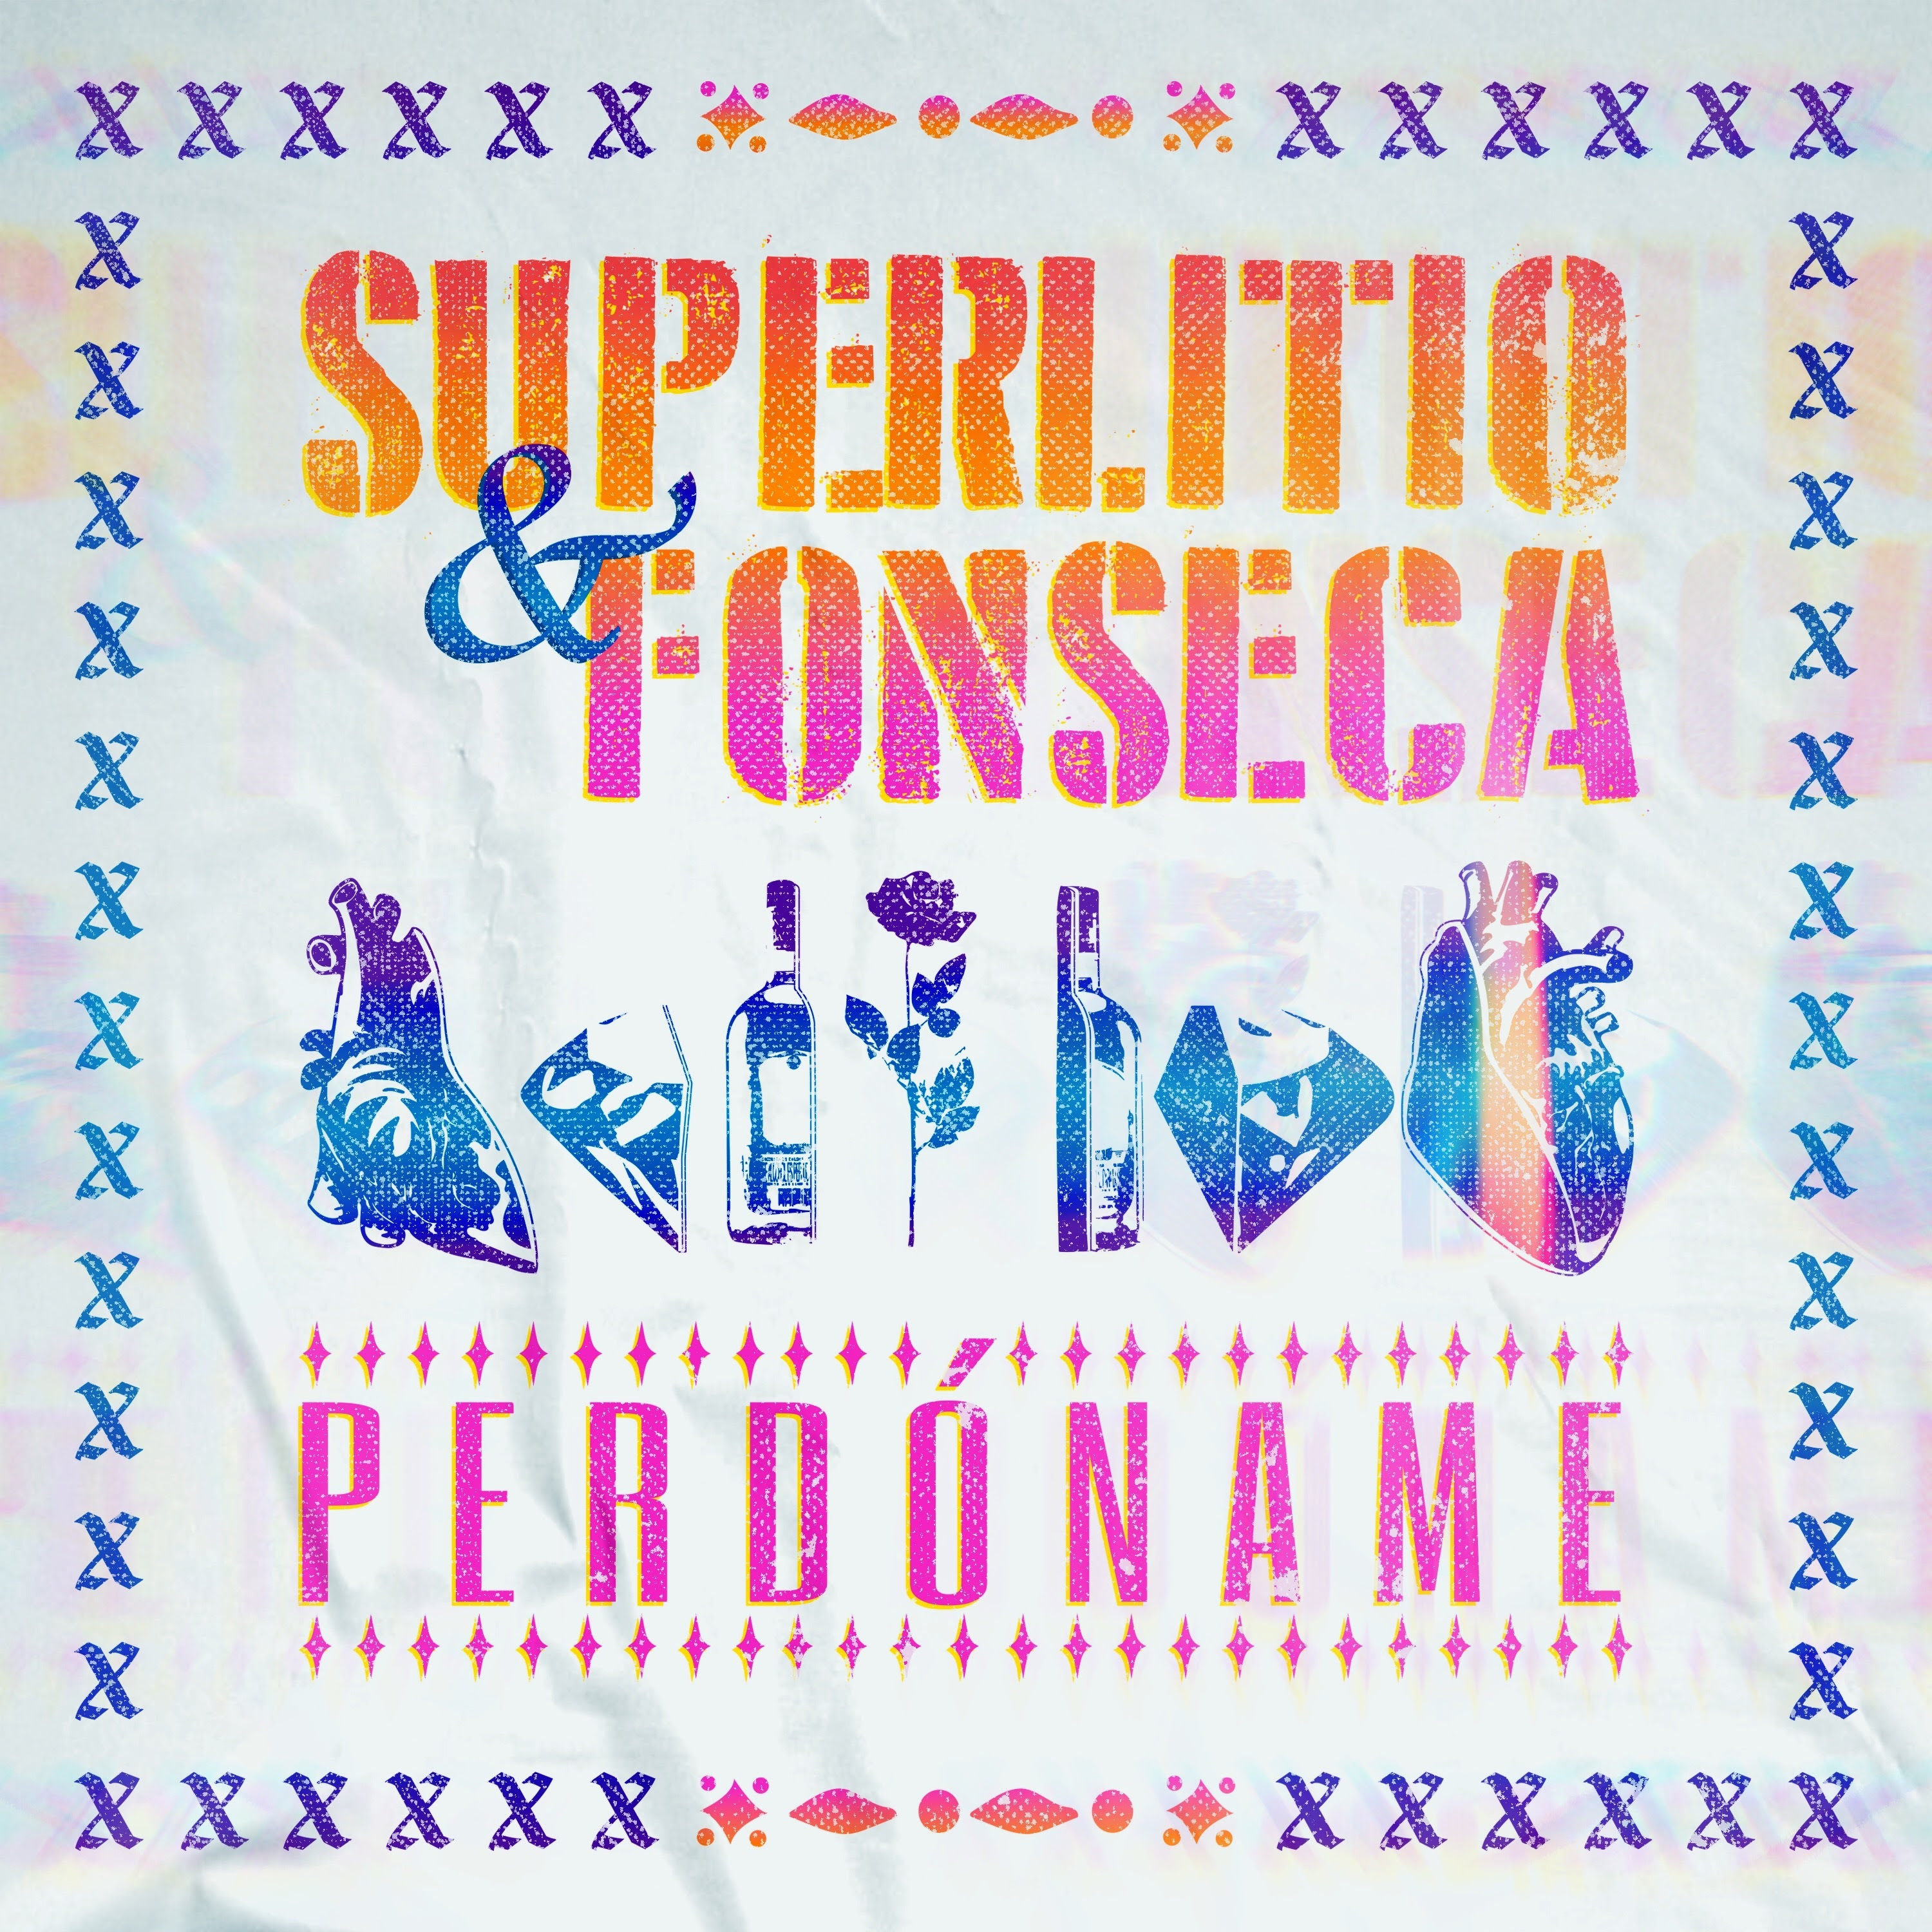 Superlitio se renueva y presenta “perdóname” junto a Fonseca,  primer sencillo de su próximo álbum revisitado “X”